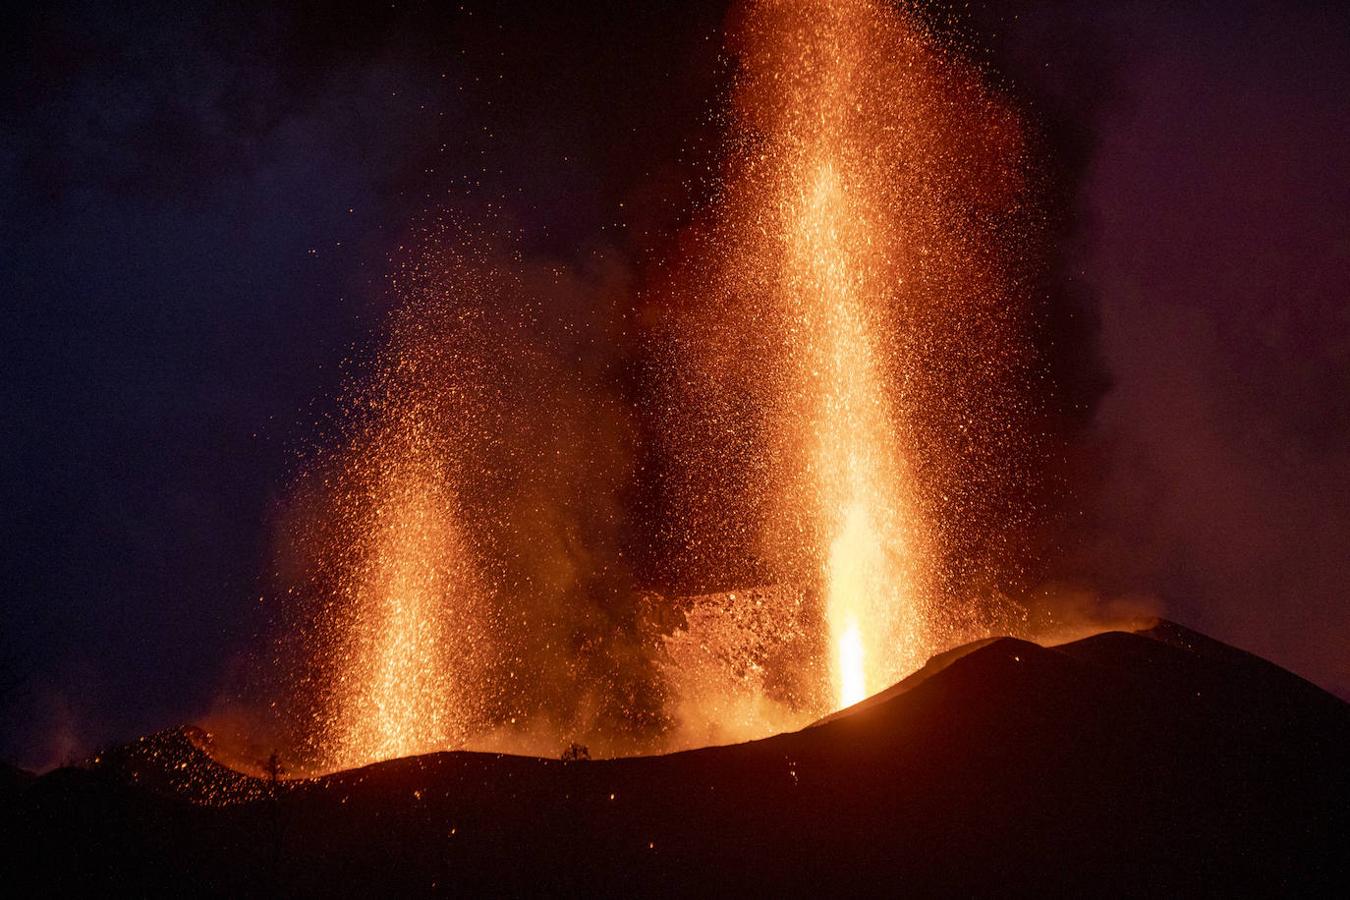 Con la ausencia de luz, desde el lado oriental del volcán se pueden observar dos de sus bocas compitiendo en altura. La columna eruptiva puede tener varios kilómetros de altura. 